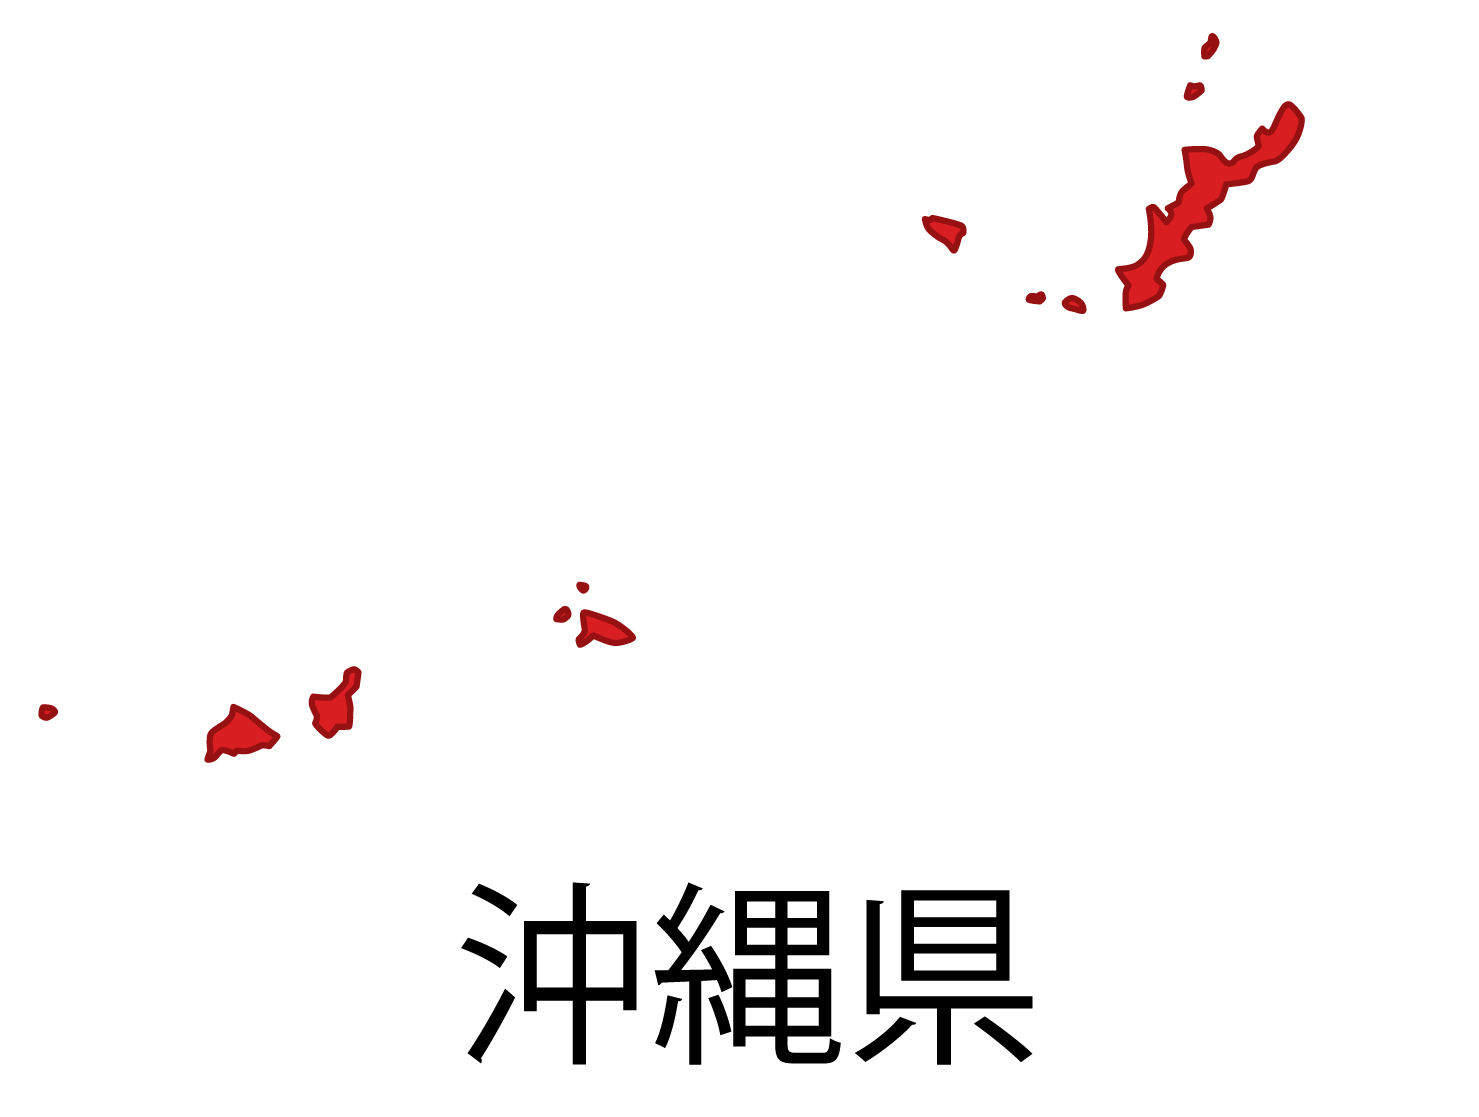 沖縄県の地図イラスト フリー素材 を無料ダウンロード